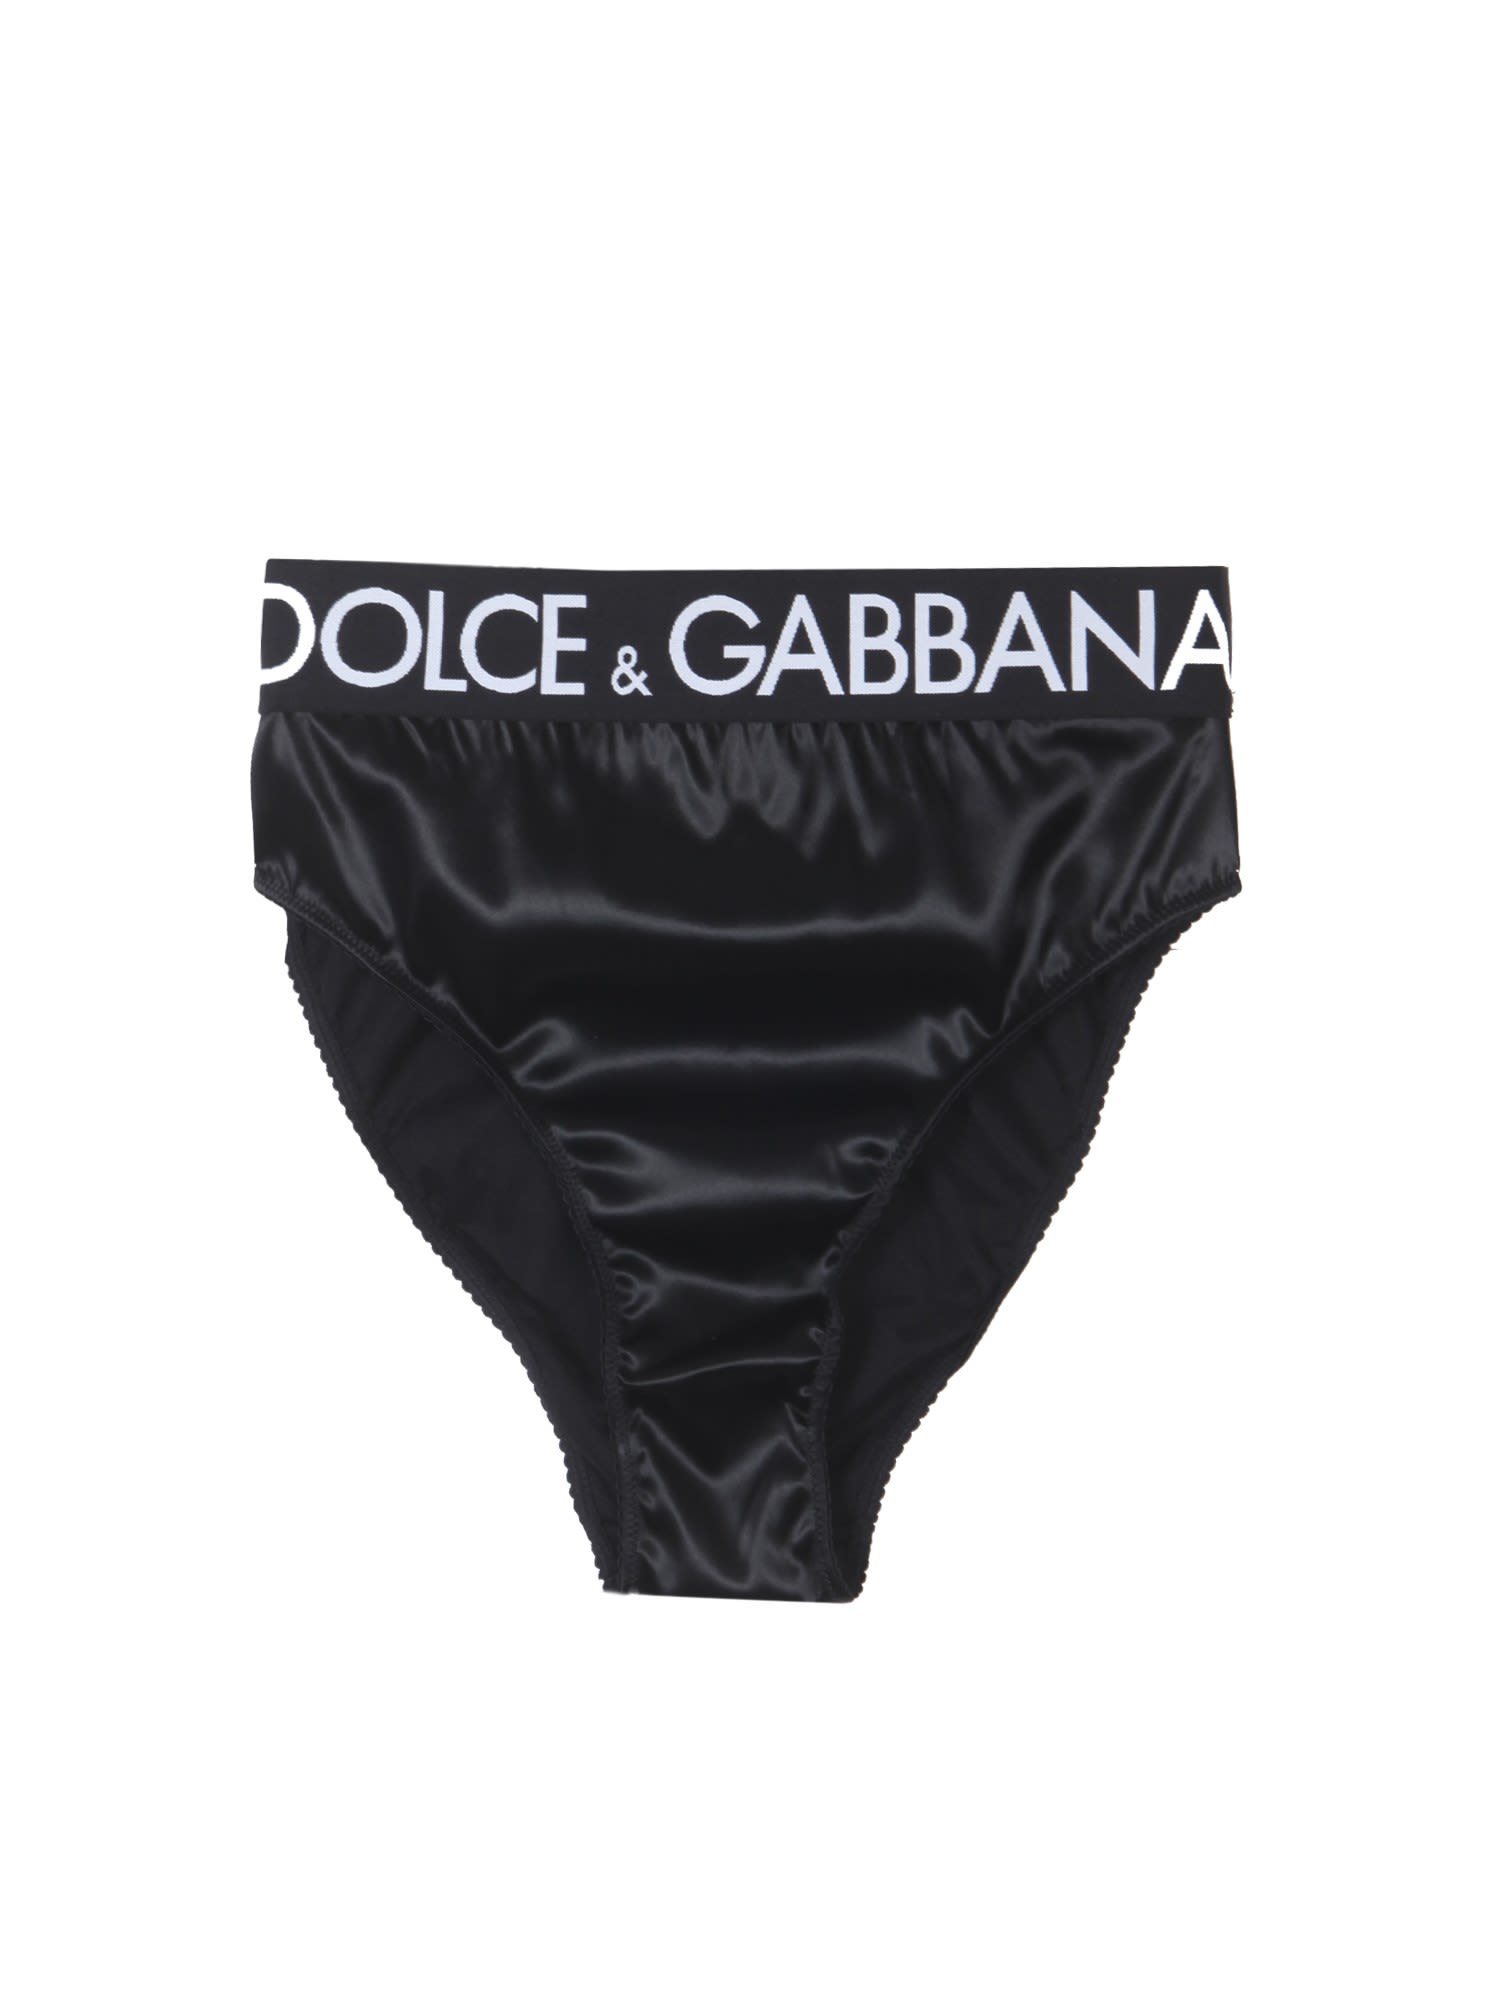 Dolce & Gabbana High Waist Satin Briefs